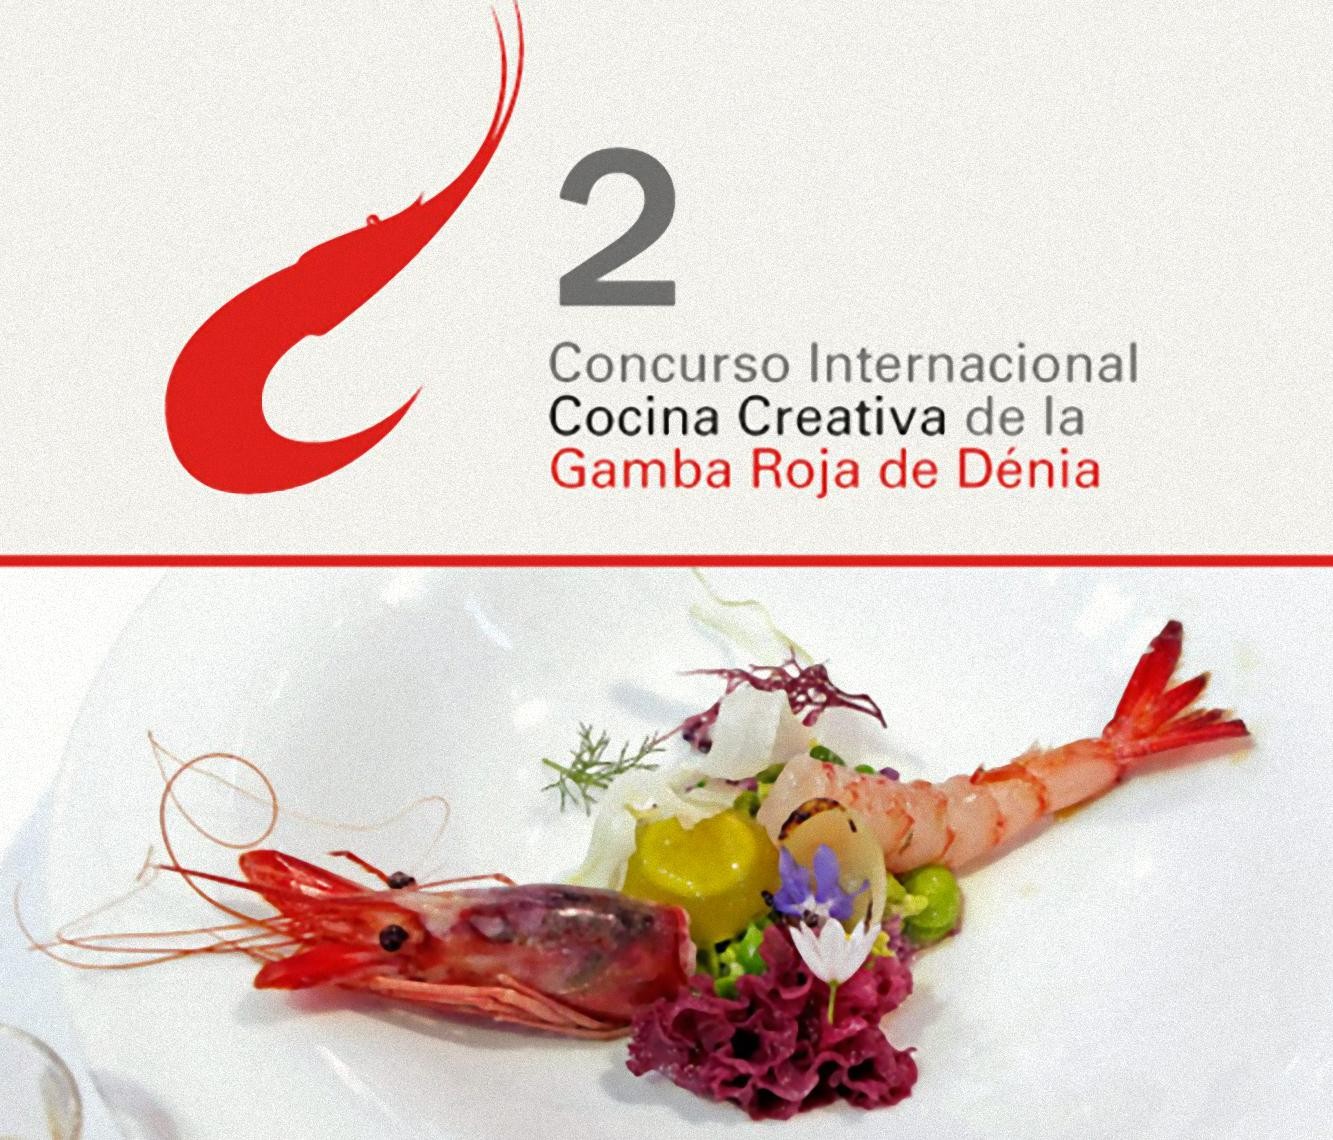 Cartel Concurso Internacional Cocina creativa de la gamba roja de Dénia 2013